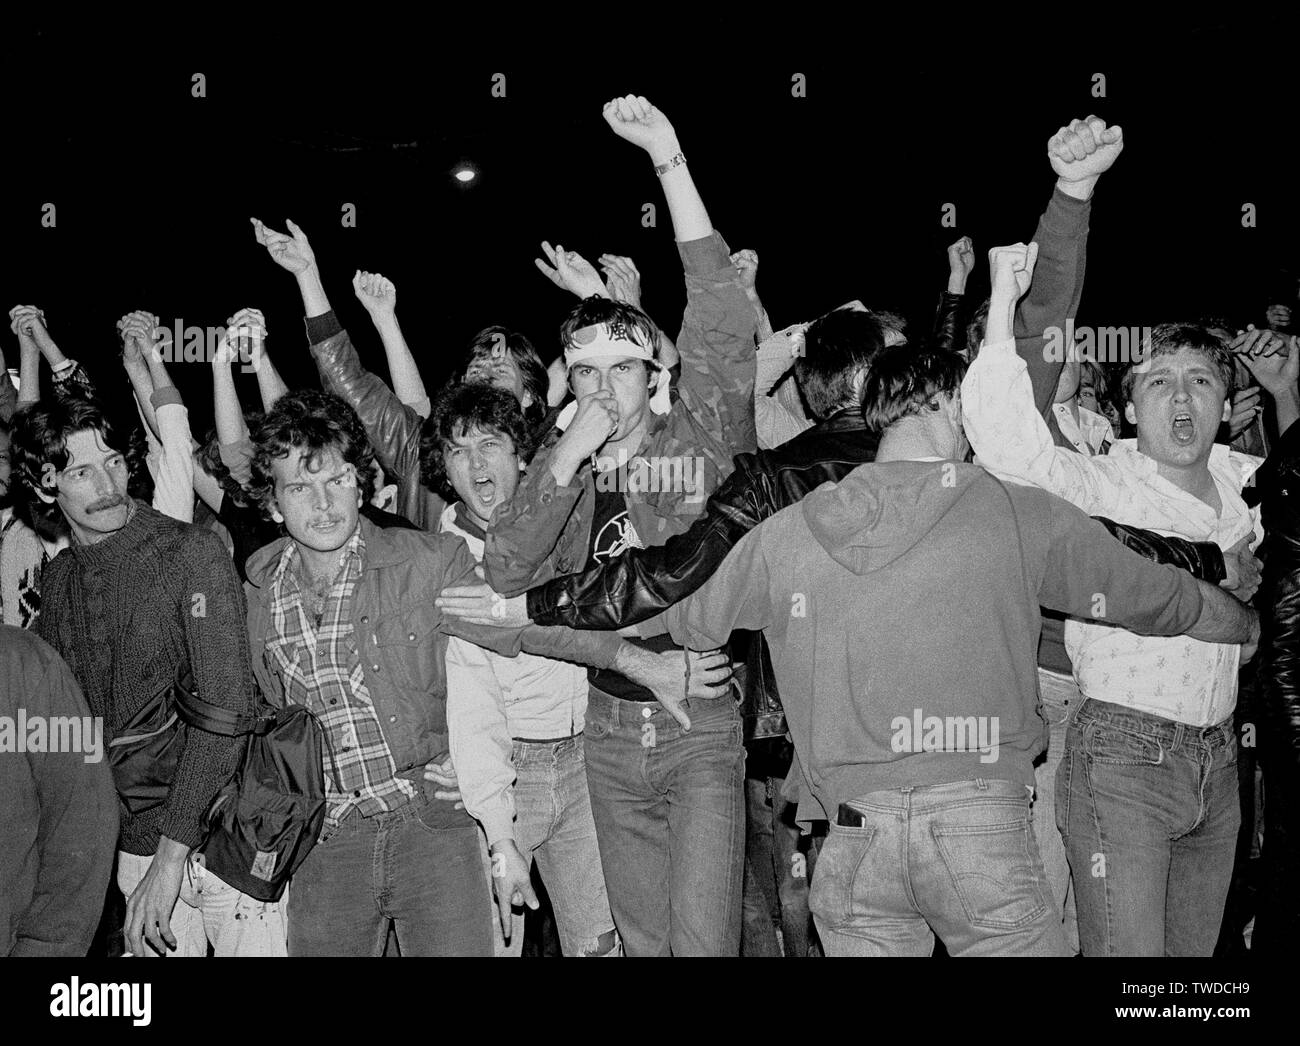 Peuple réuni après la Dan White verdict de l'assassinat du maire George Moscone et Harvey Milk Superviseur gay à San Francisco, Californie, le 21 mai, 1979 Banque D'Images